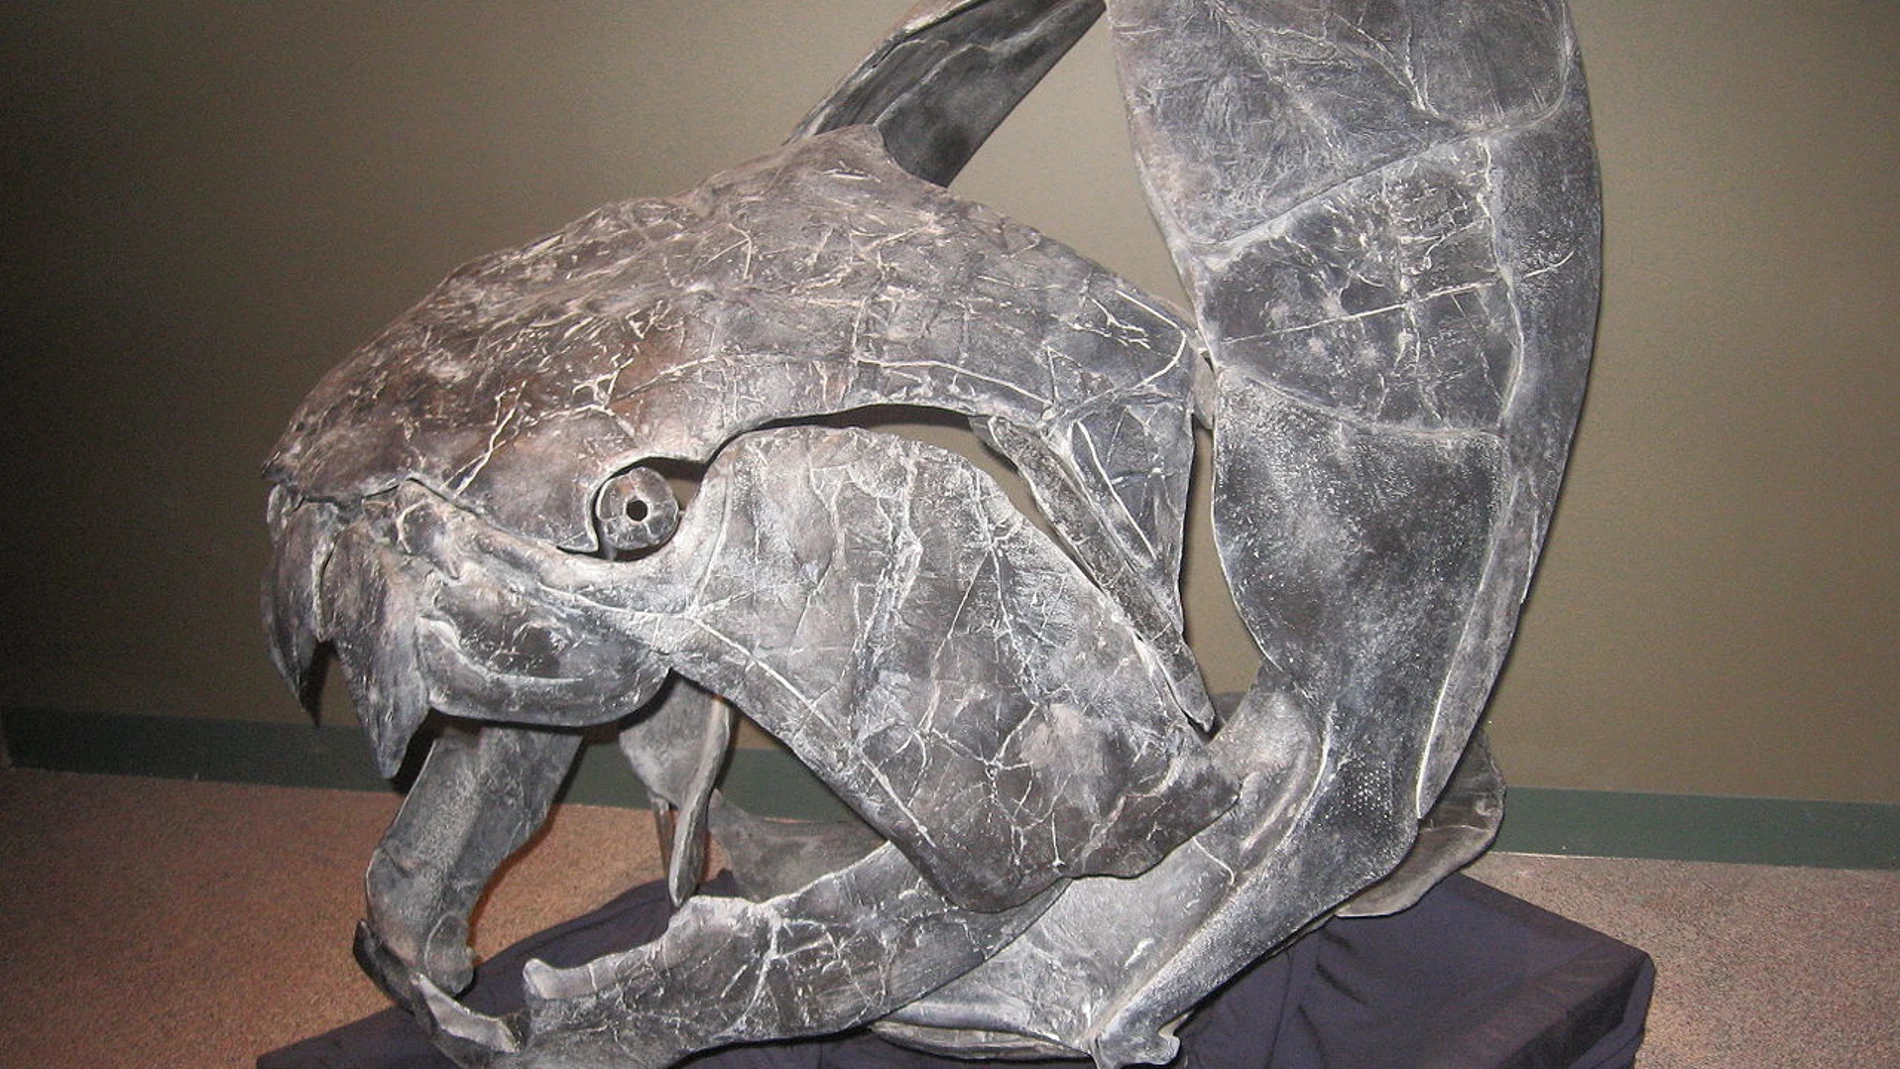 Dunkleosteus era el mayor depredador del Devónico, un pez carnívoro que alcanzaba los 9 metros de longitud y cuya cabeza estaba cubierta de placas de hueso. Él y todo su linaje fueron barridos por la extinción del Devónico.